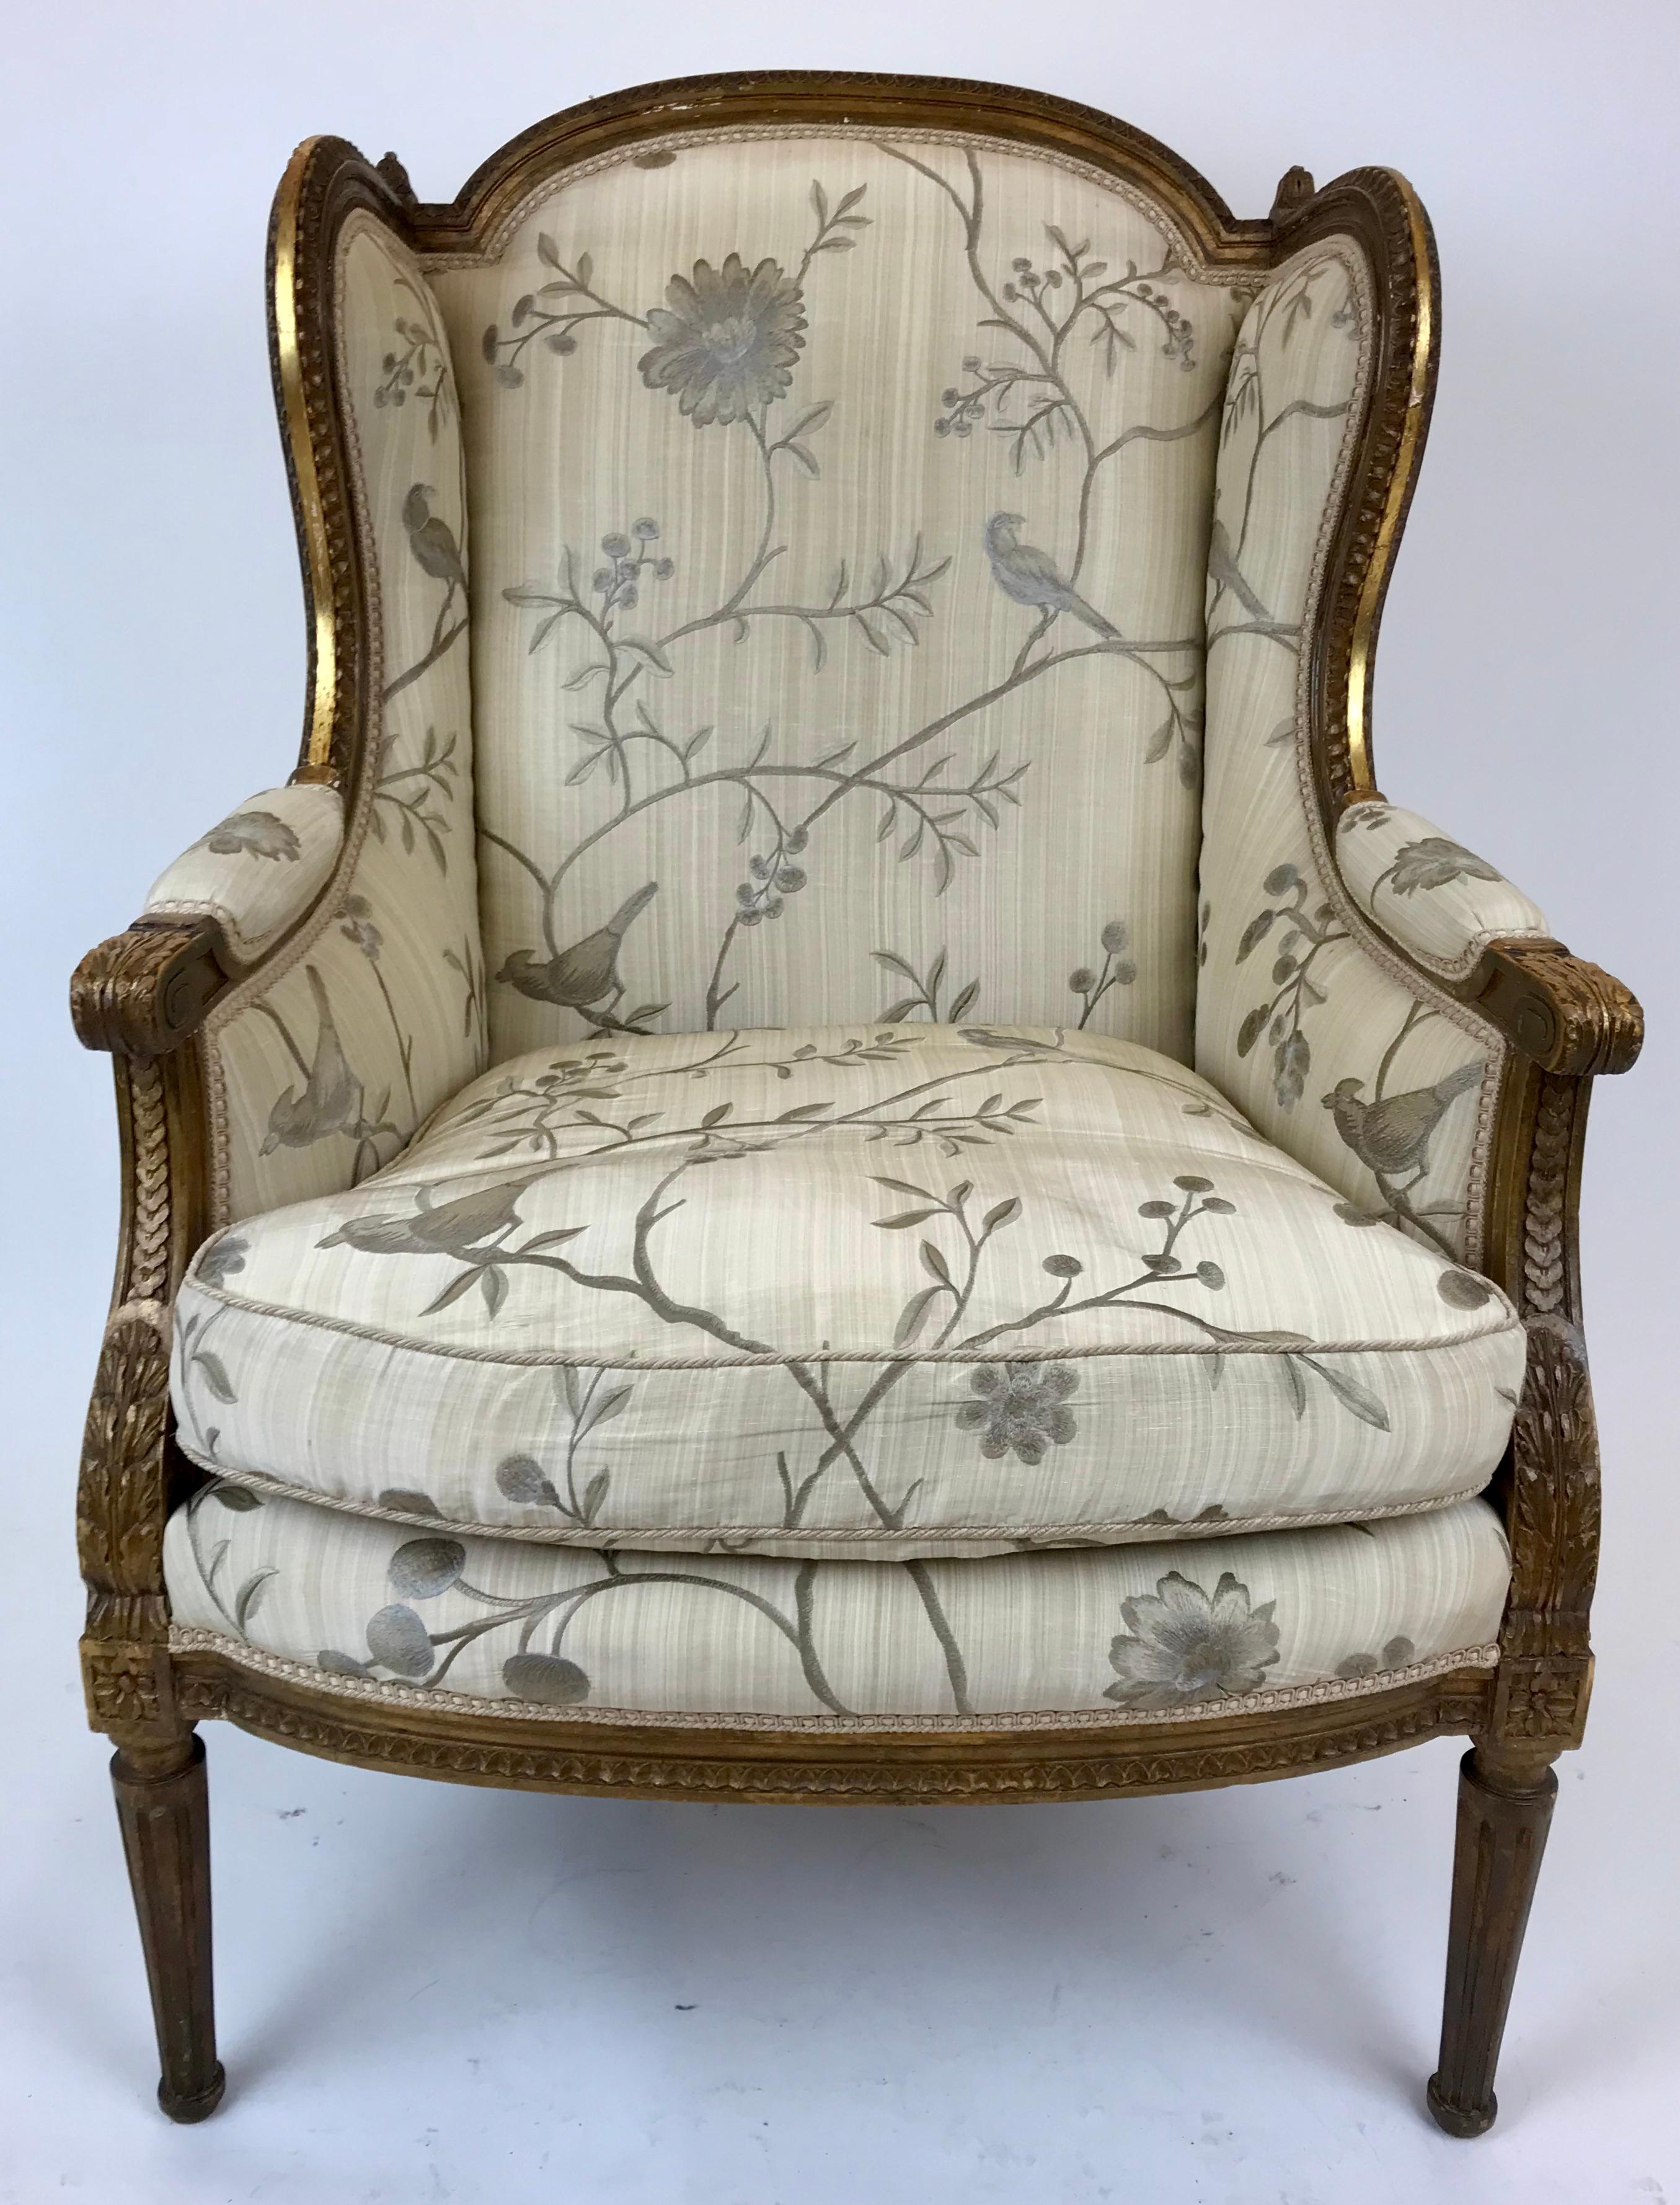 Ce fauteuil en bois doré de style Louis XVI, sculpté à la main, présente des motifs classiques, notamment des feuilles d'acanthe, des rosettes et des pieds fuselés cannelés.